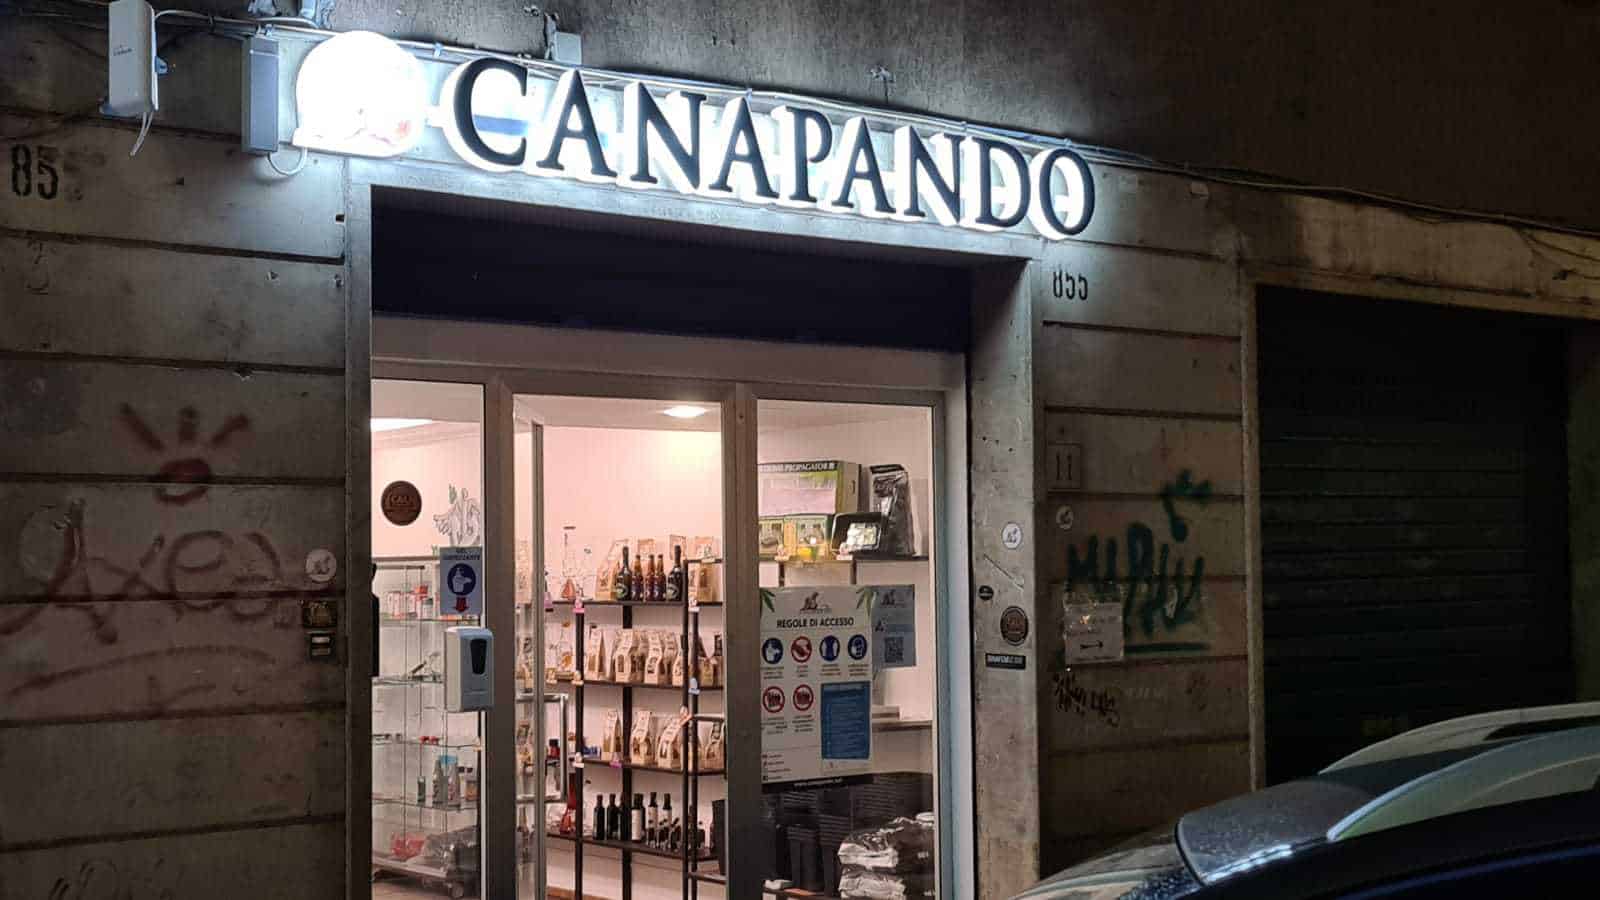 Vendita di cannabis a Roma: il progetto di Canapando